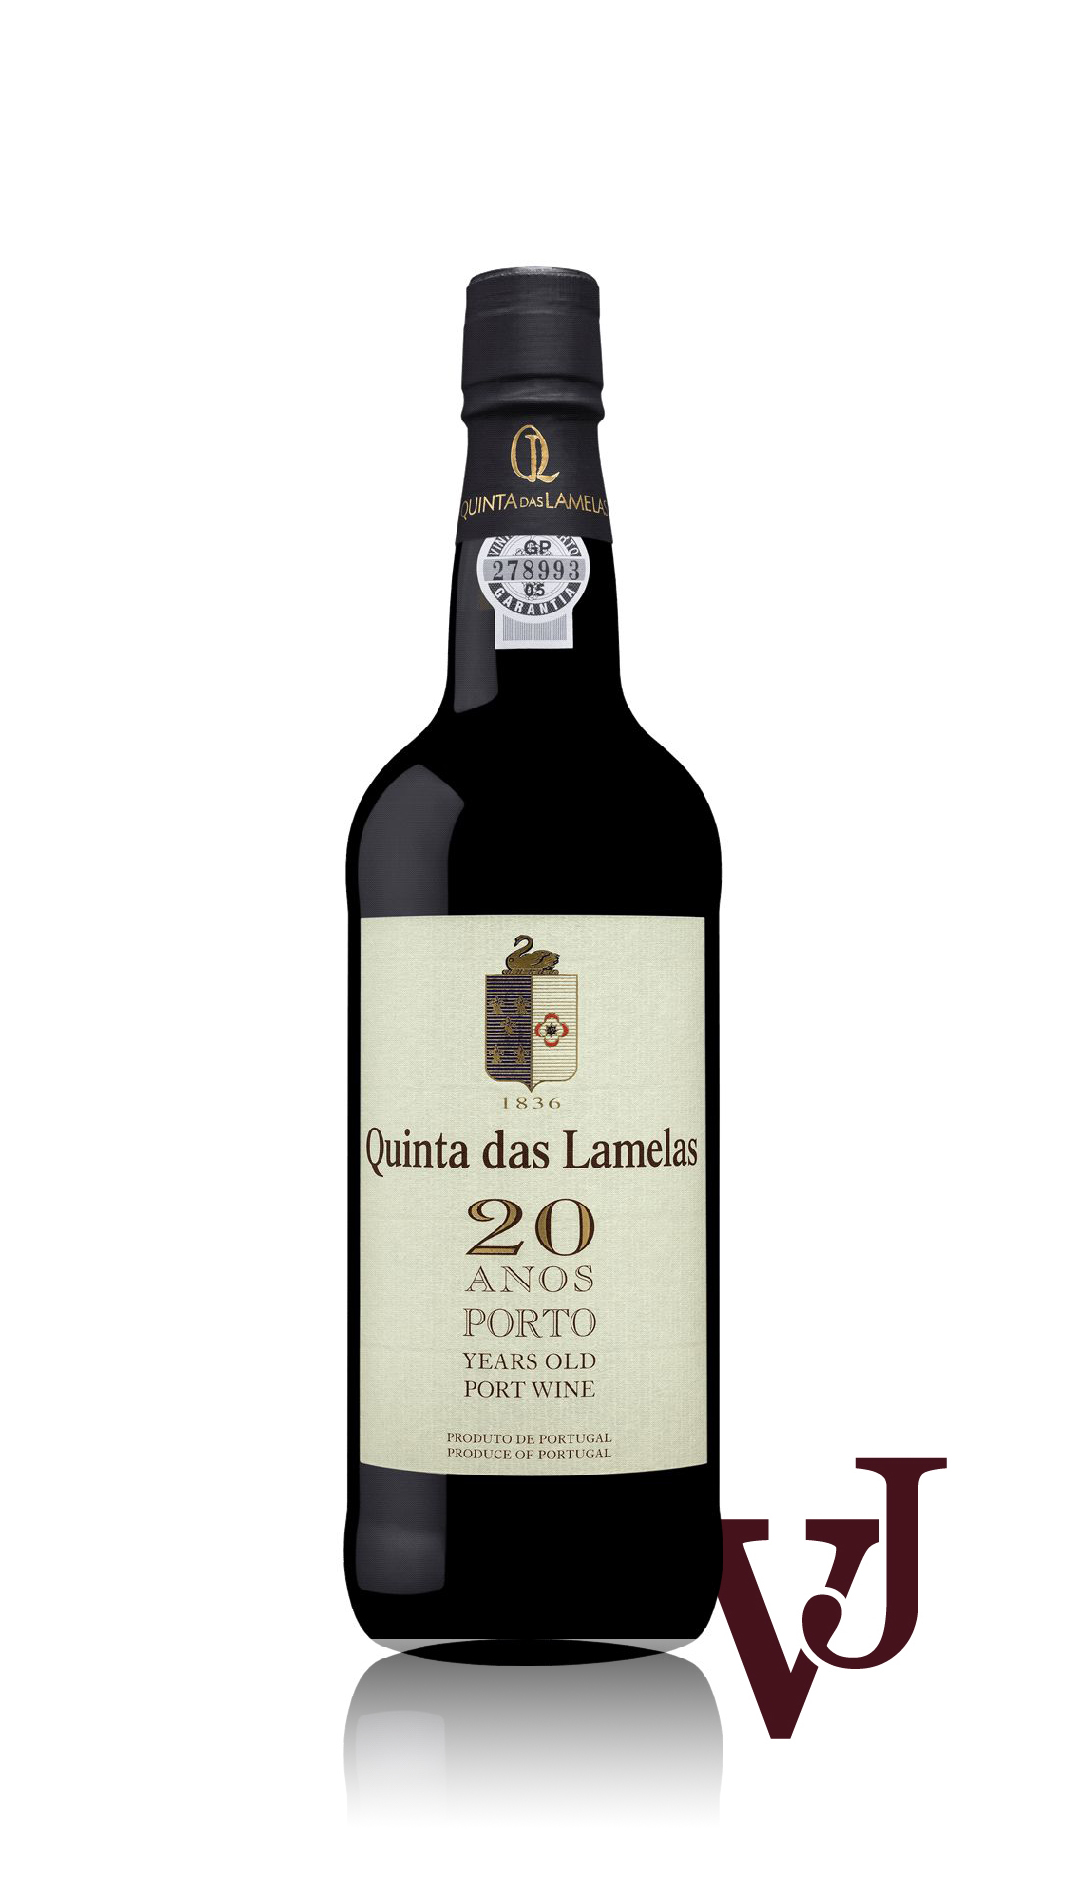 Övrigt Vin - Quinta das Lamelas 20 years Tawny Port artikel nummer 7360501 från producenten Quinta das Lamelas från Portugal.